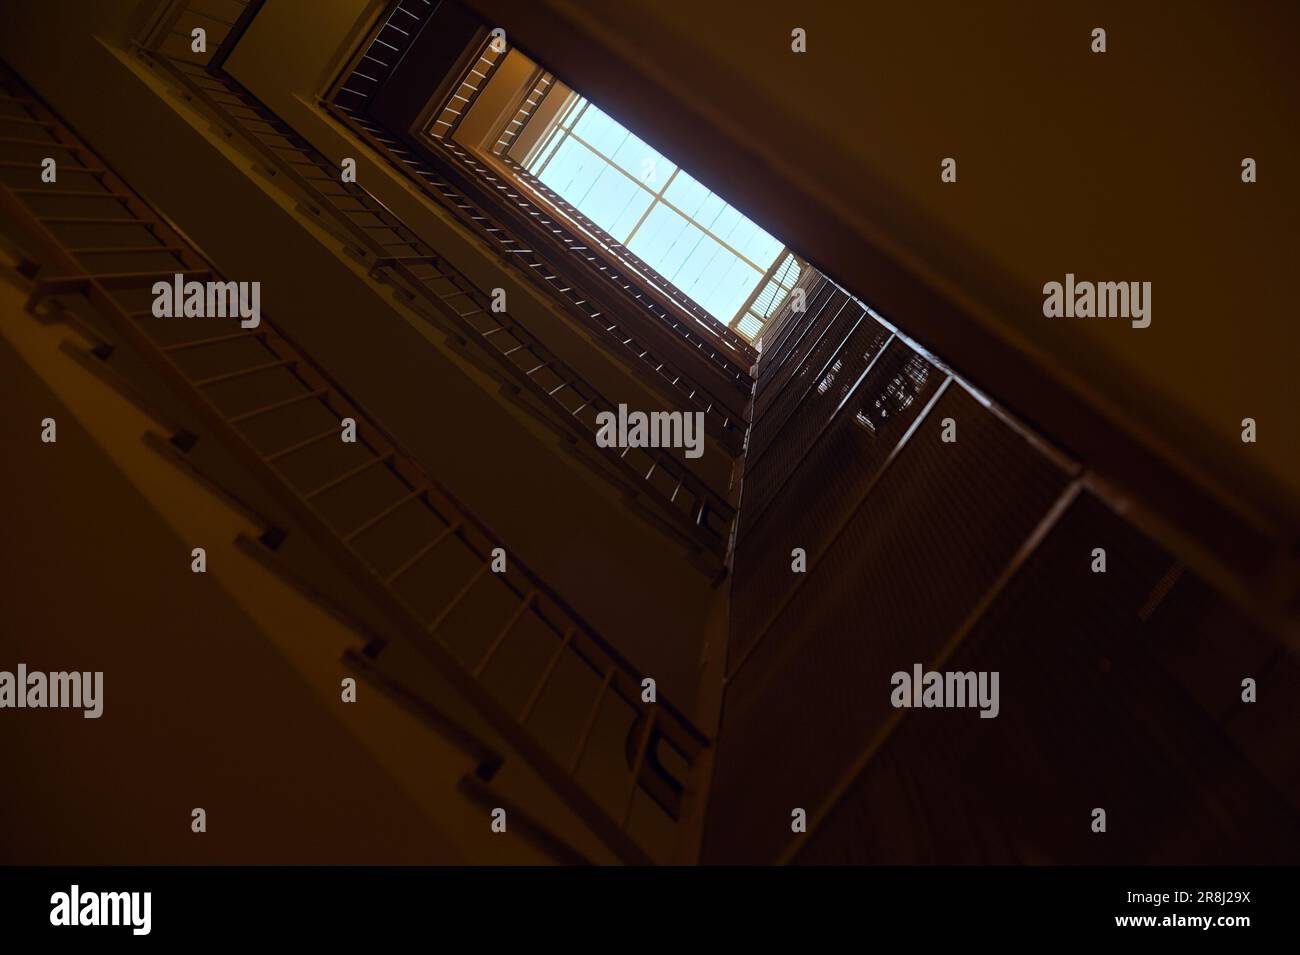 Escalier et ascenseur dans un bâtiment résidentiel avec une fenêtre au plafond vue d'en dessous Banque D'Images